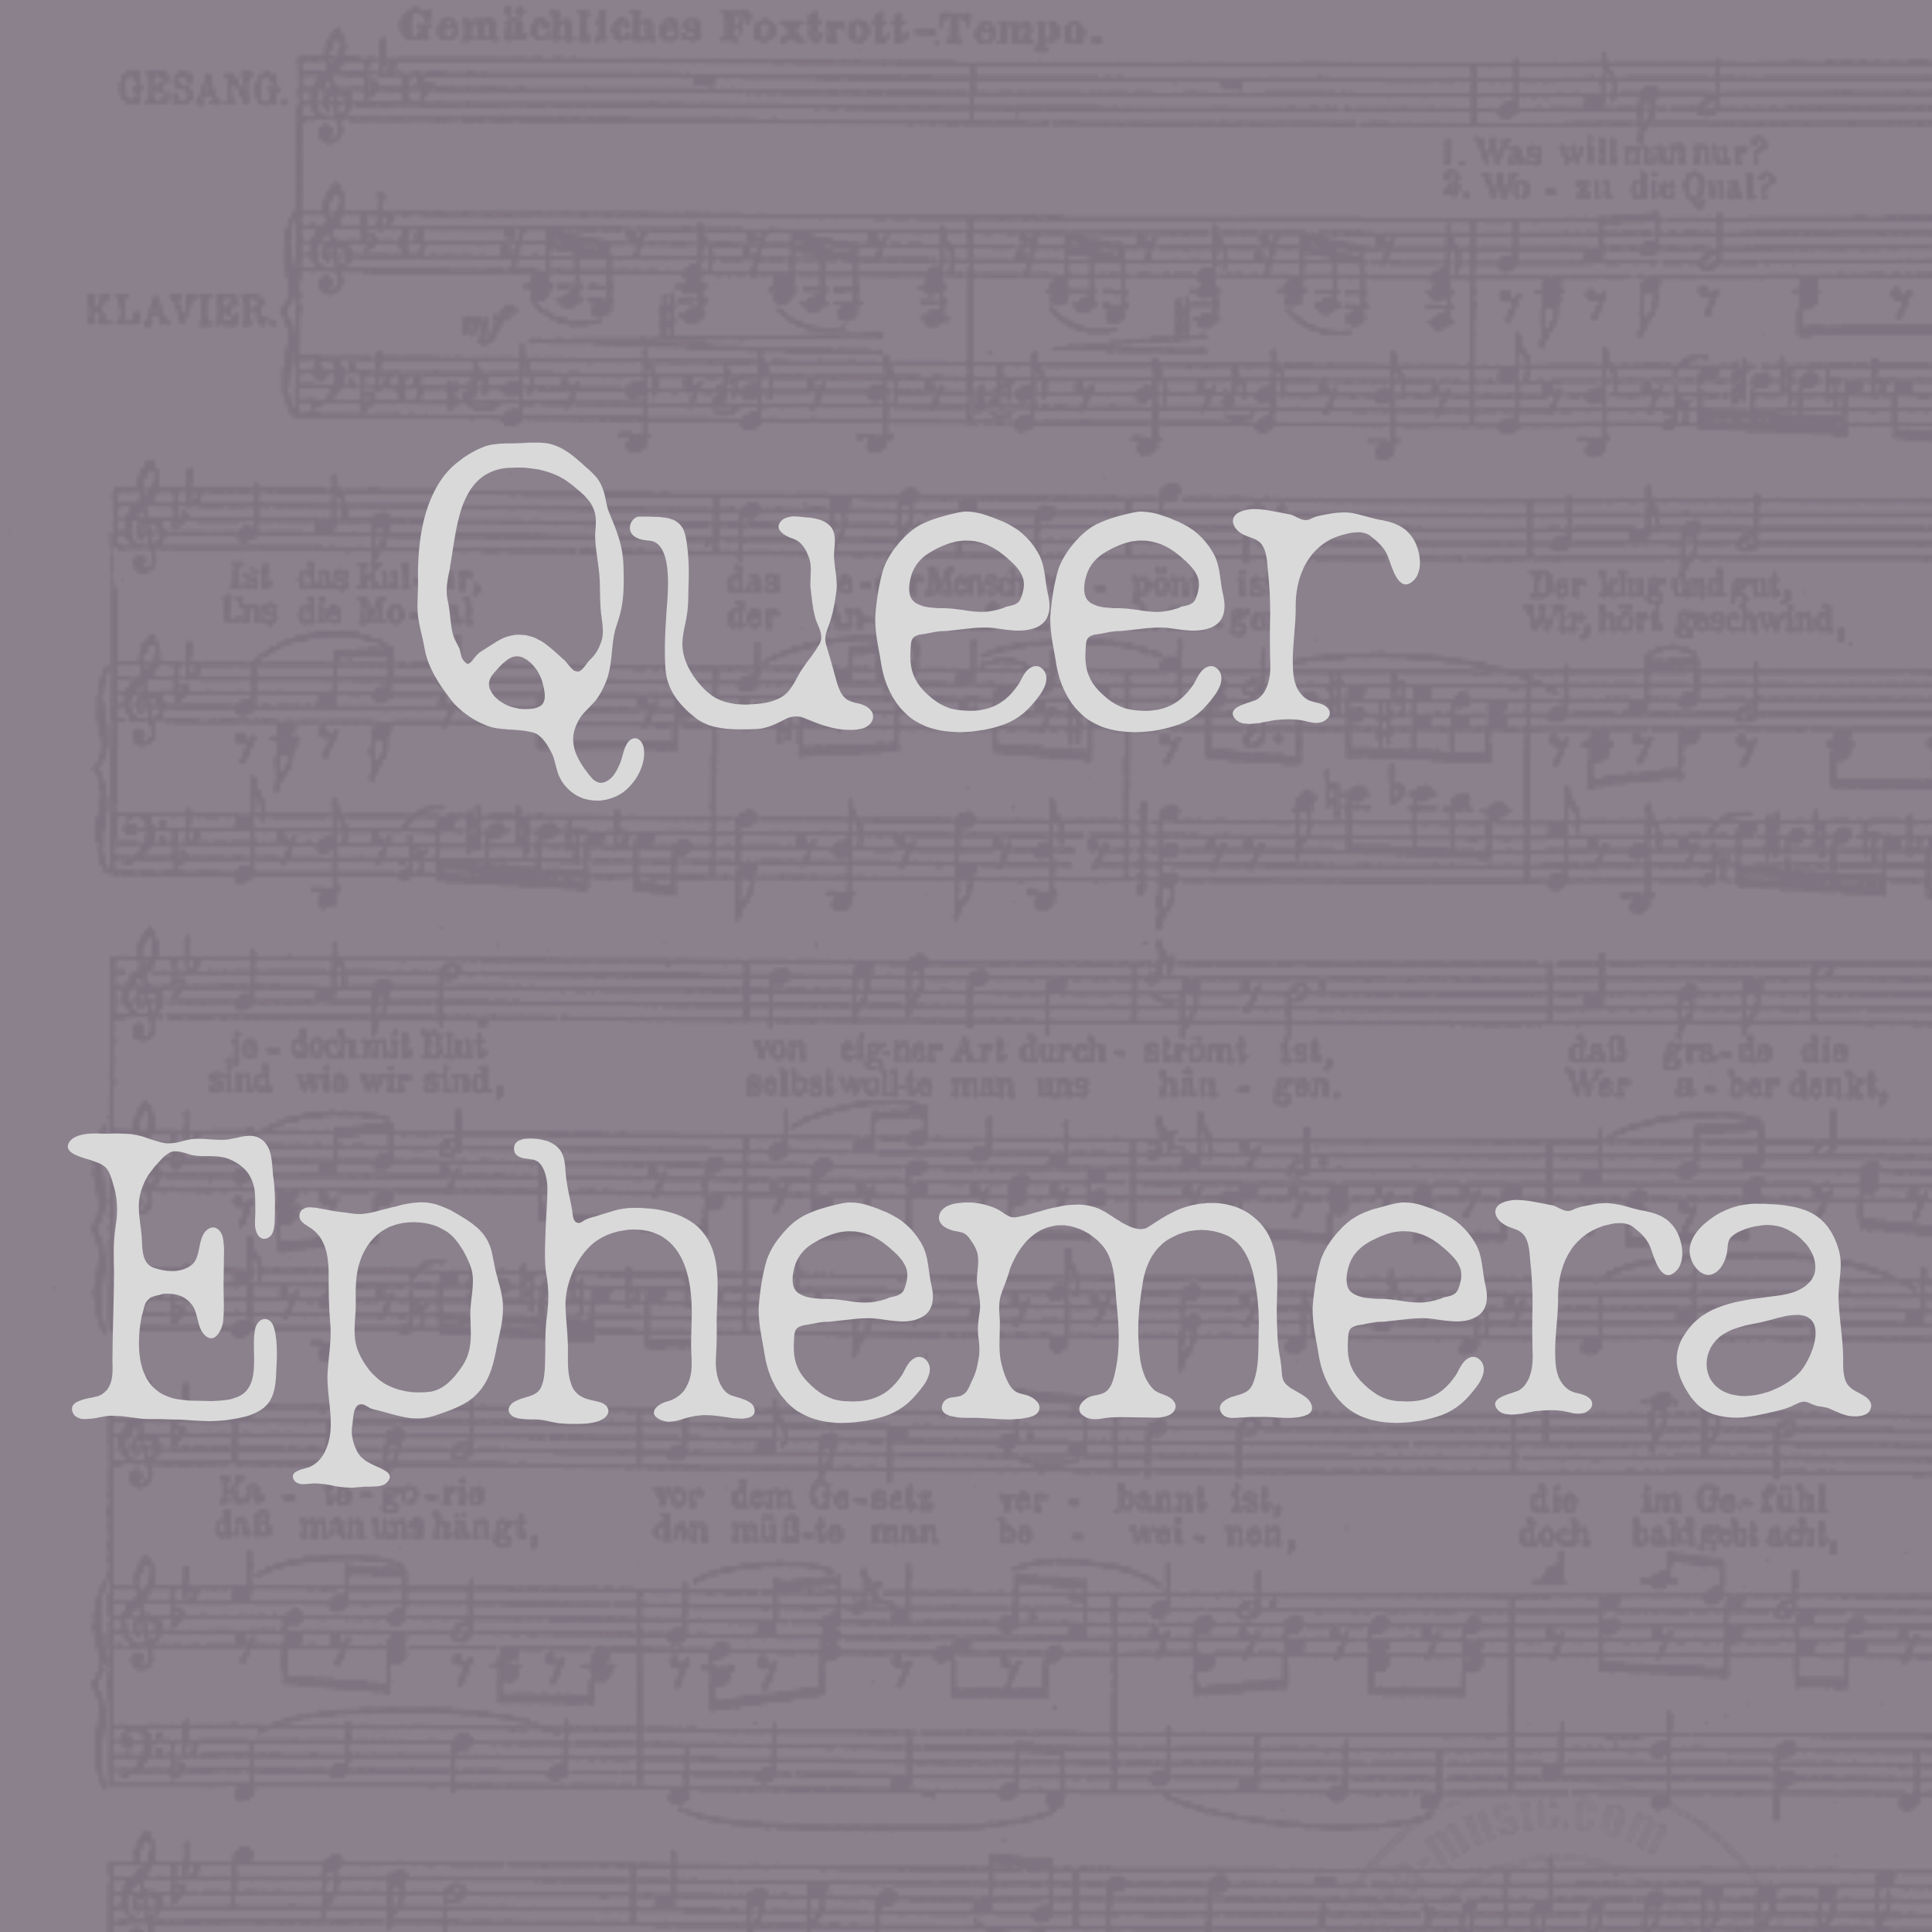 Queer Ephemera